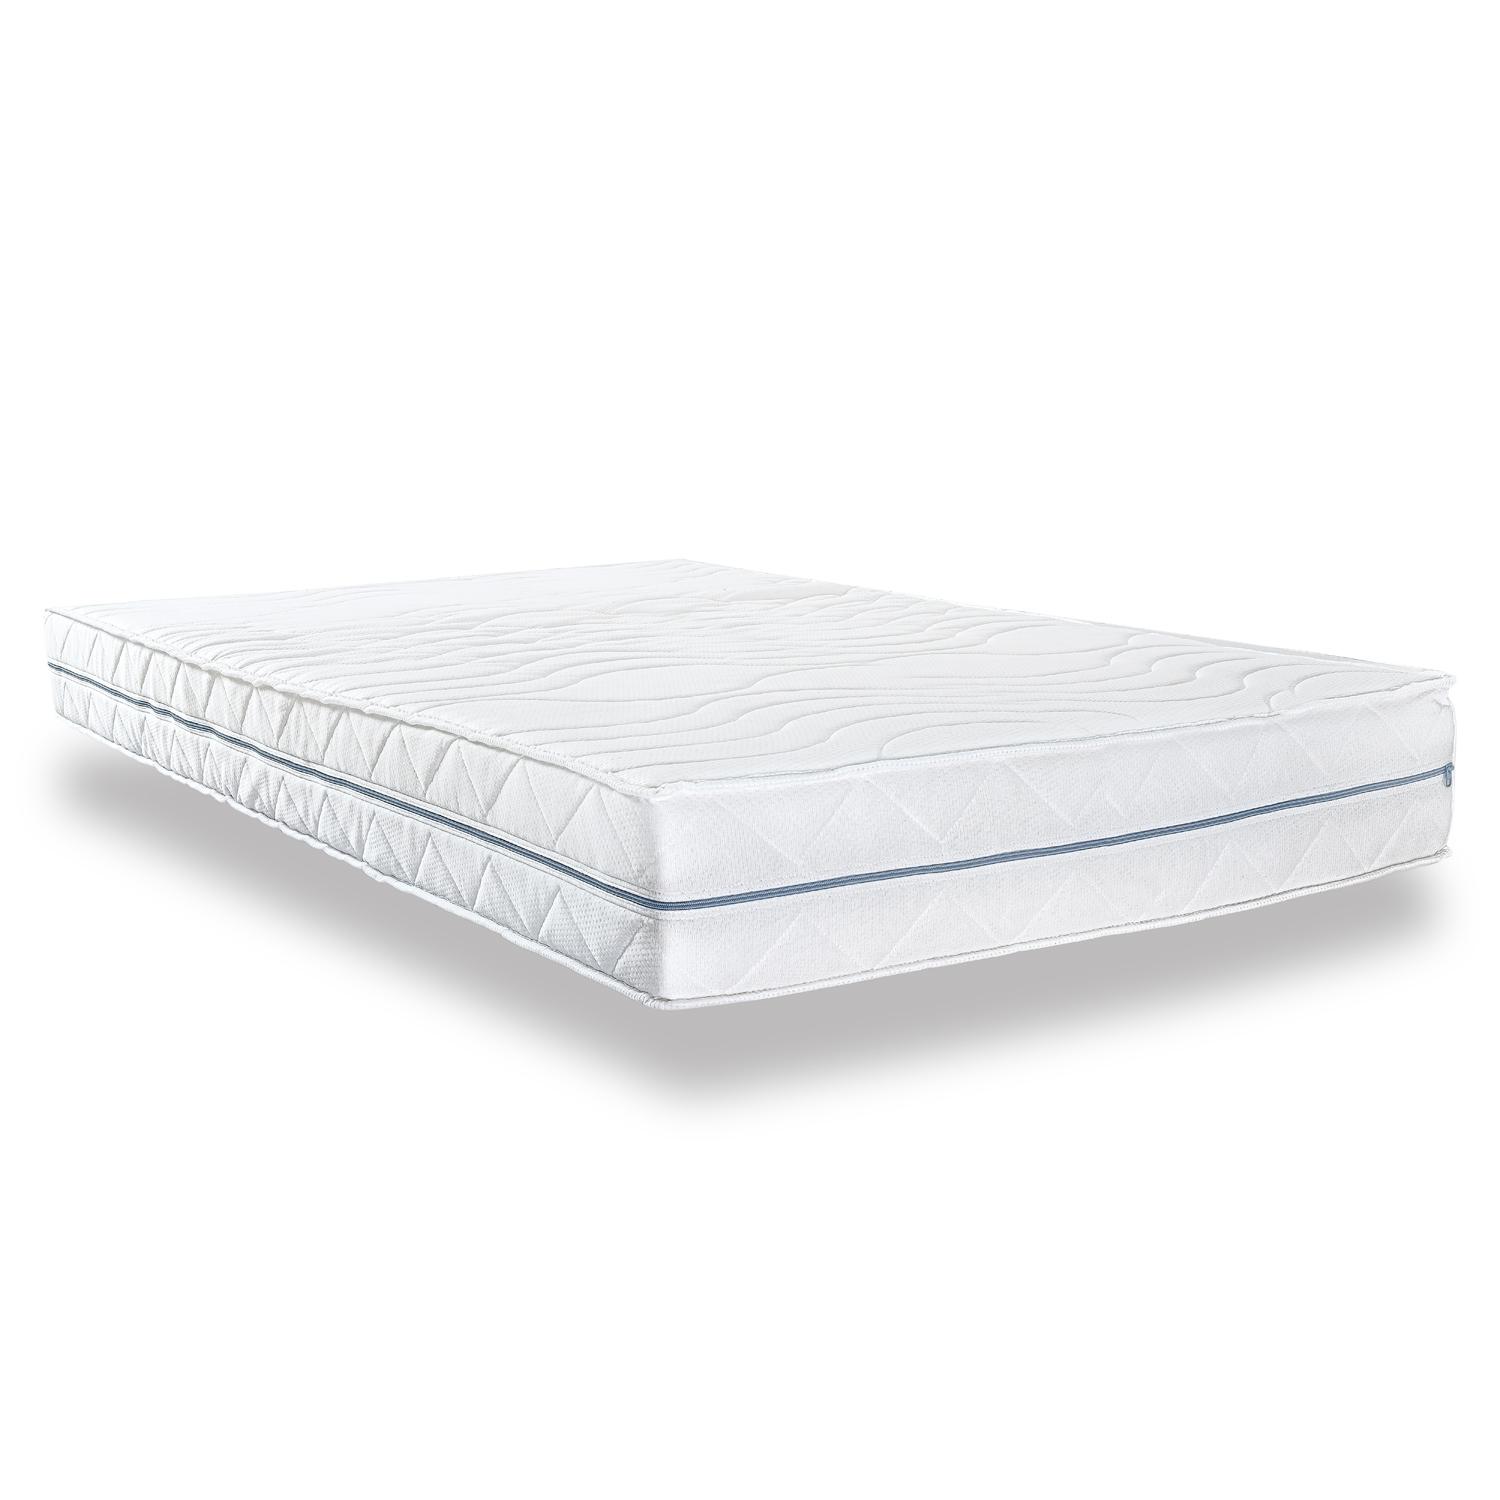 Ortopedik yatak 120x200 cm 7 bölgeli Supportho Premium, yükseklik 18 cm, sertlik seviyesi H2/H3